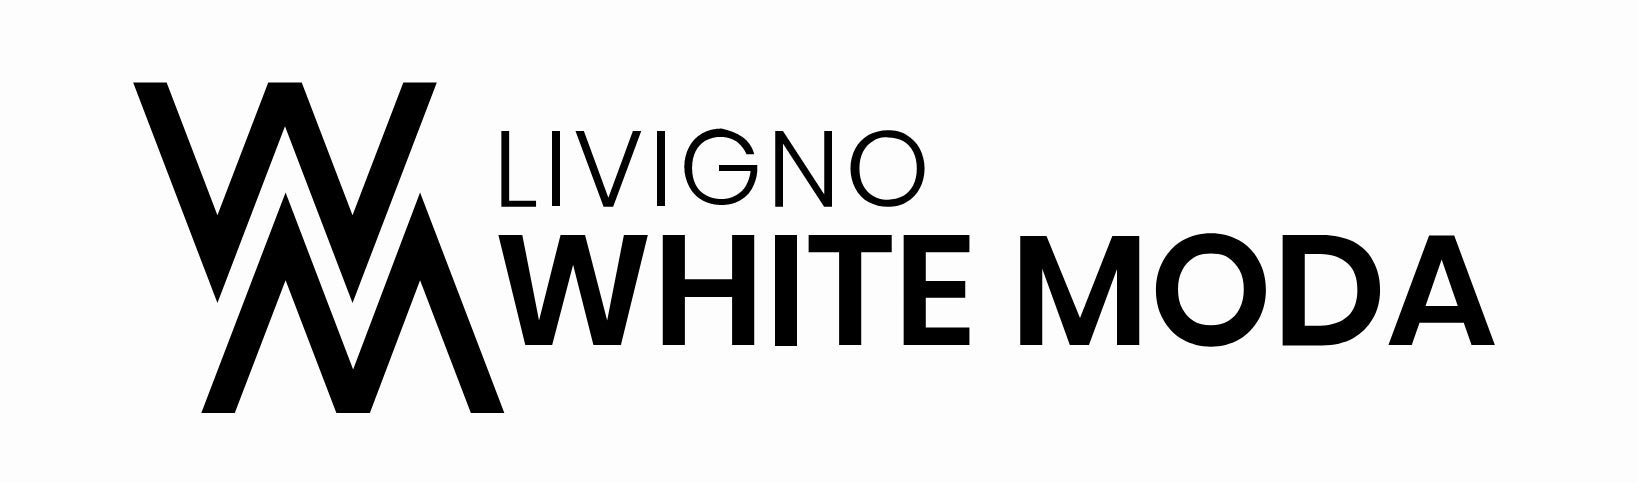 White Moda Livigno